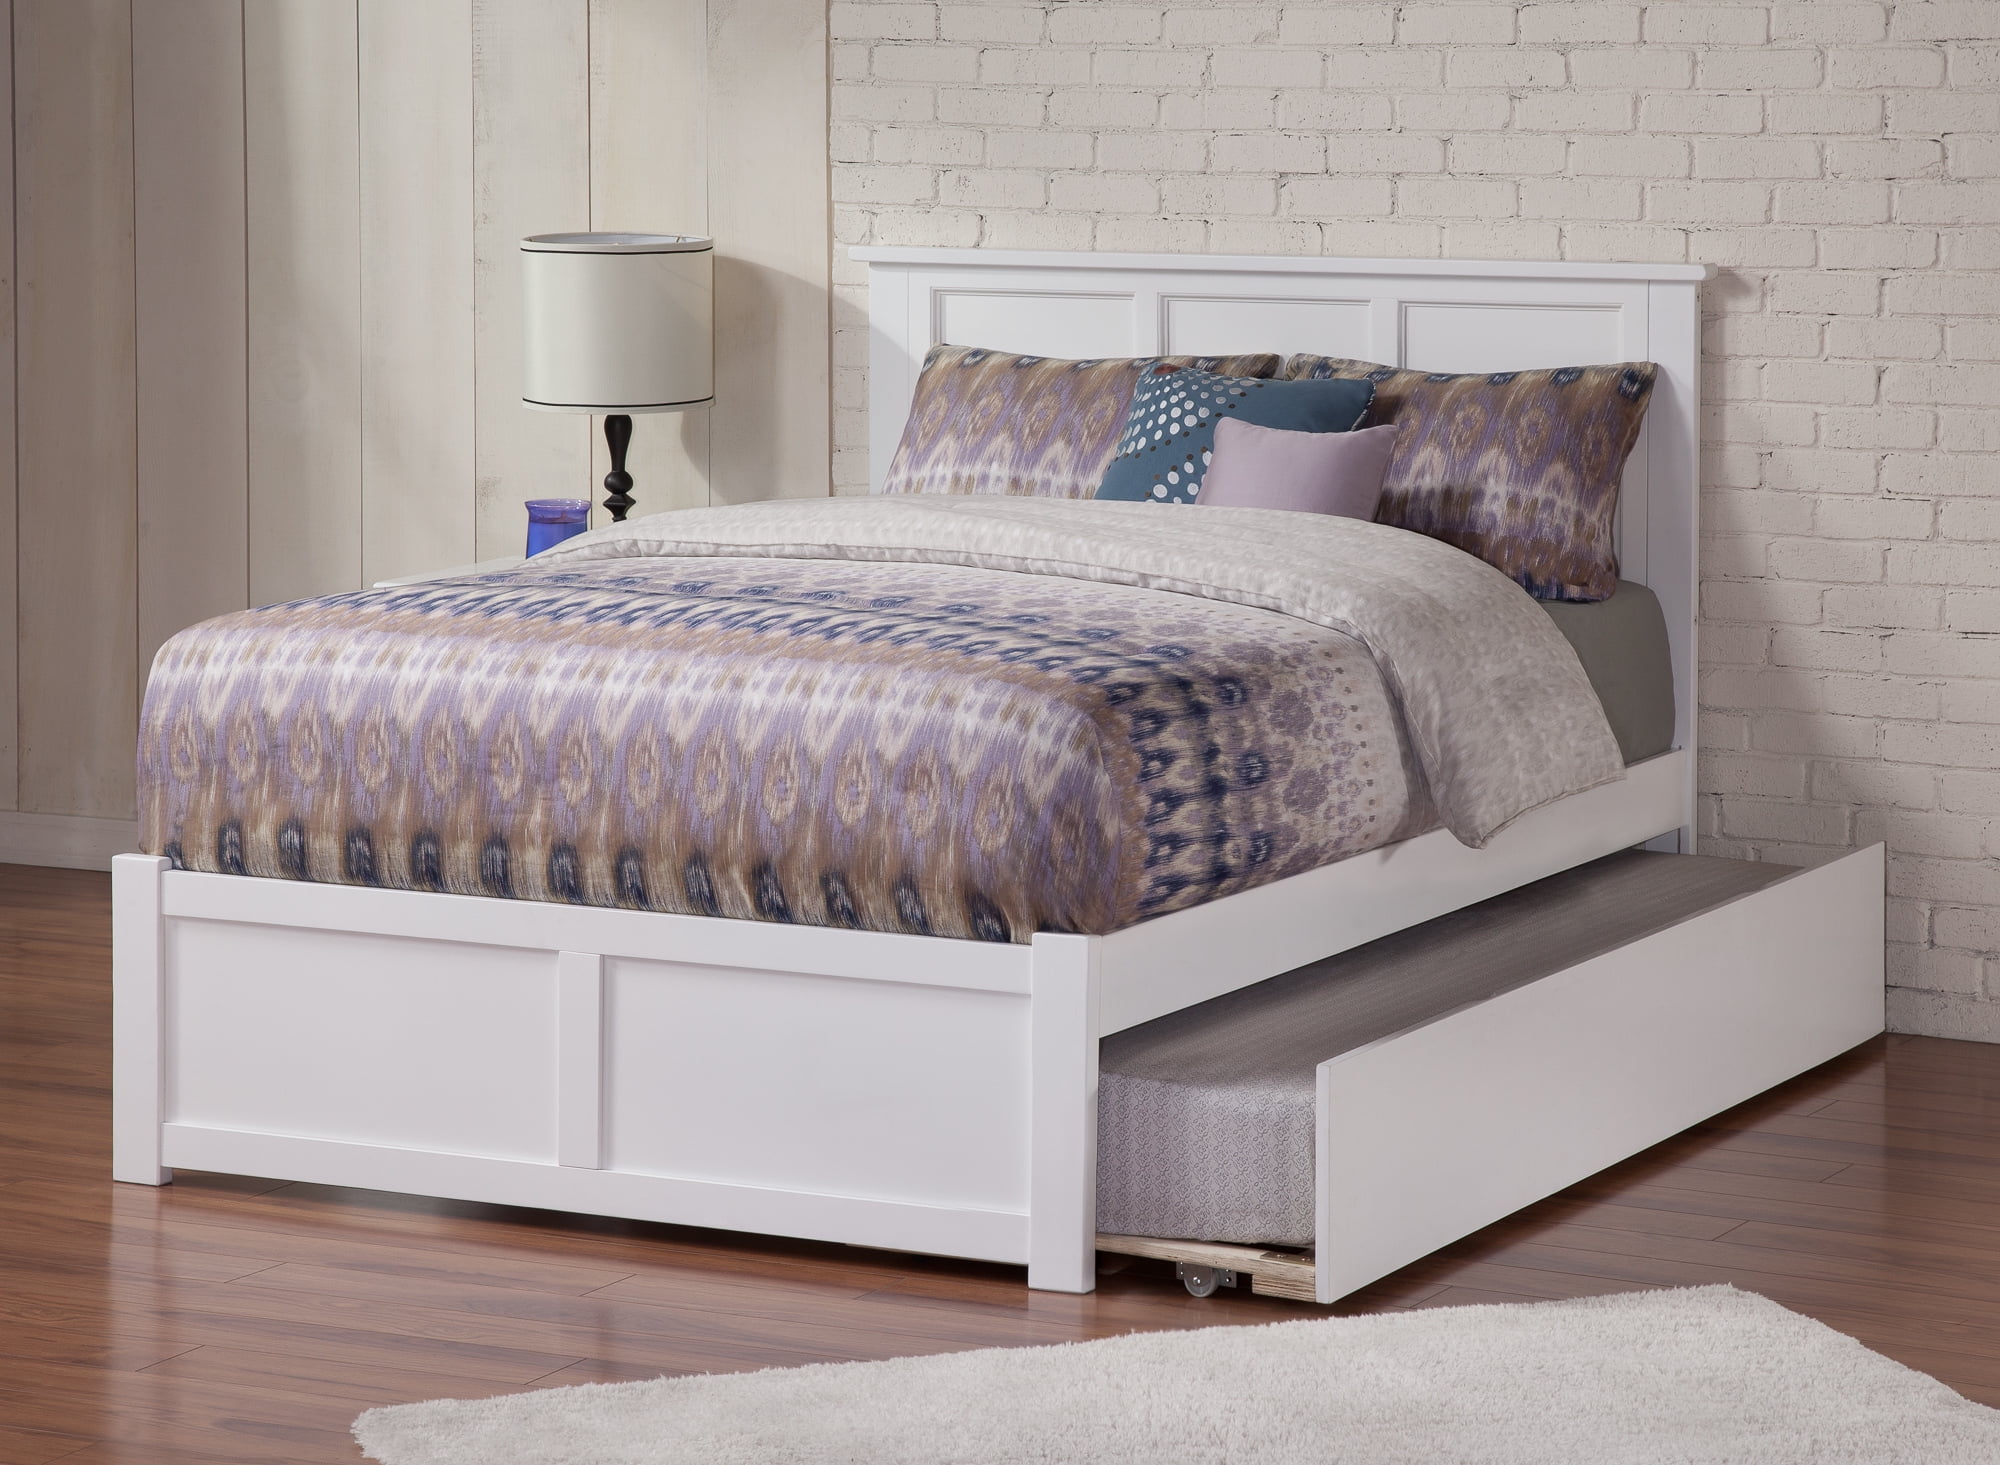 flat platform for bed mattress